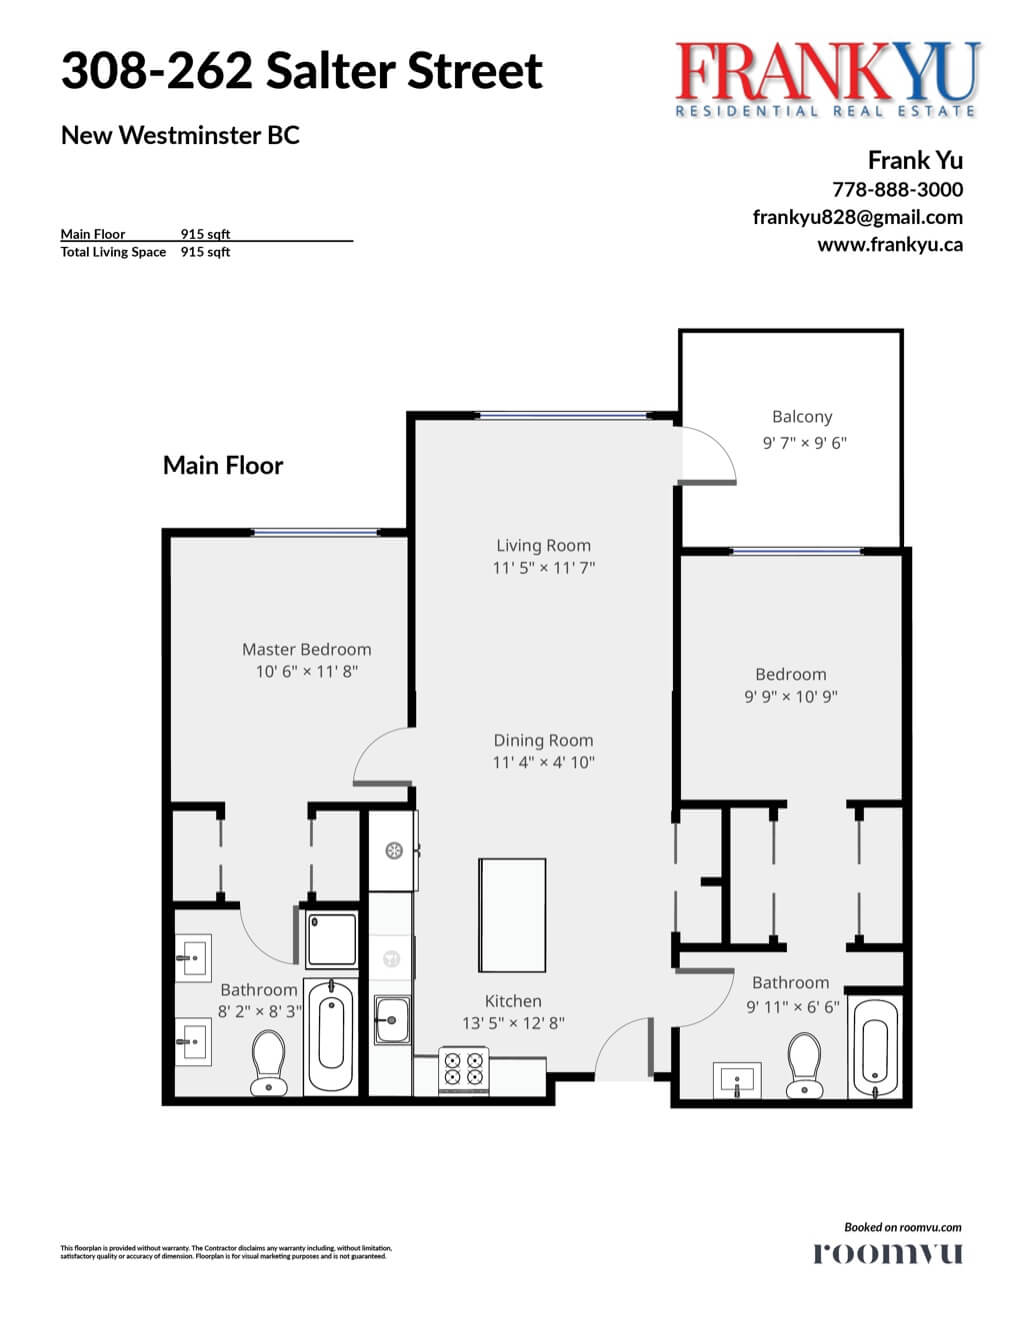 Ottawa Real Estate Floor Plans - Roomvu | roomvu